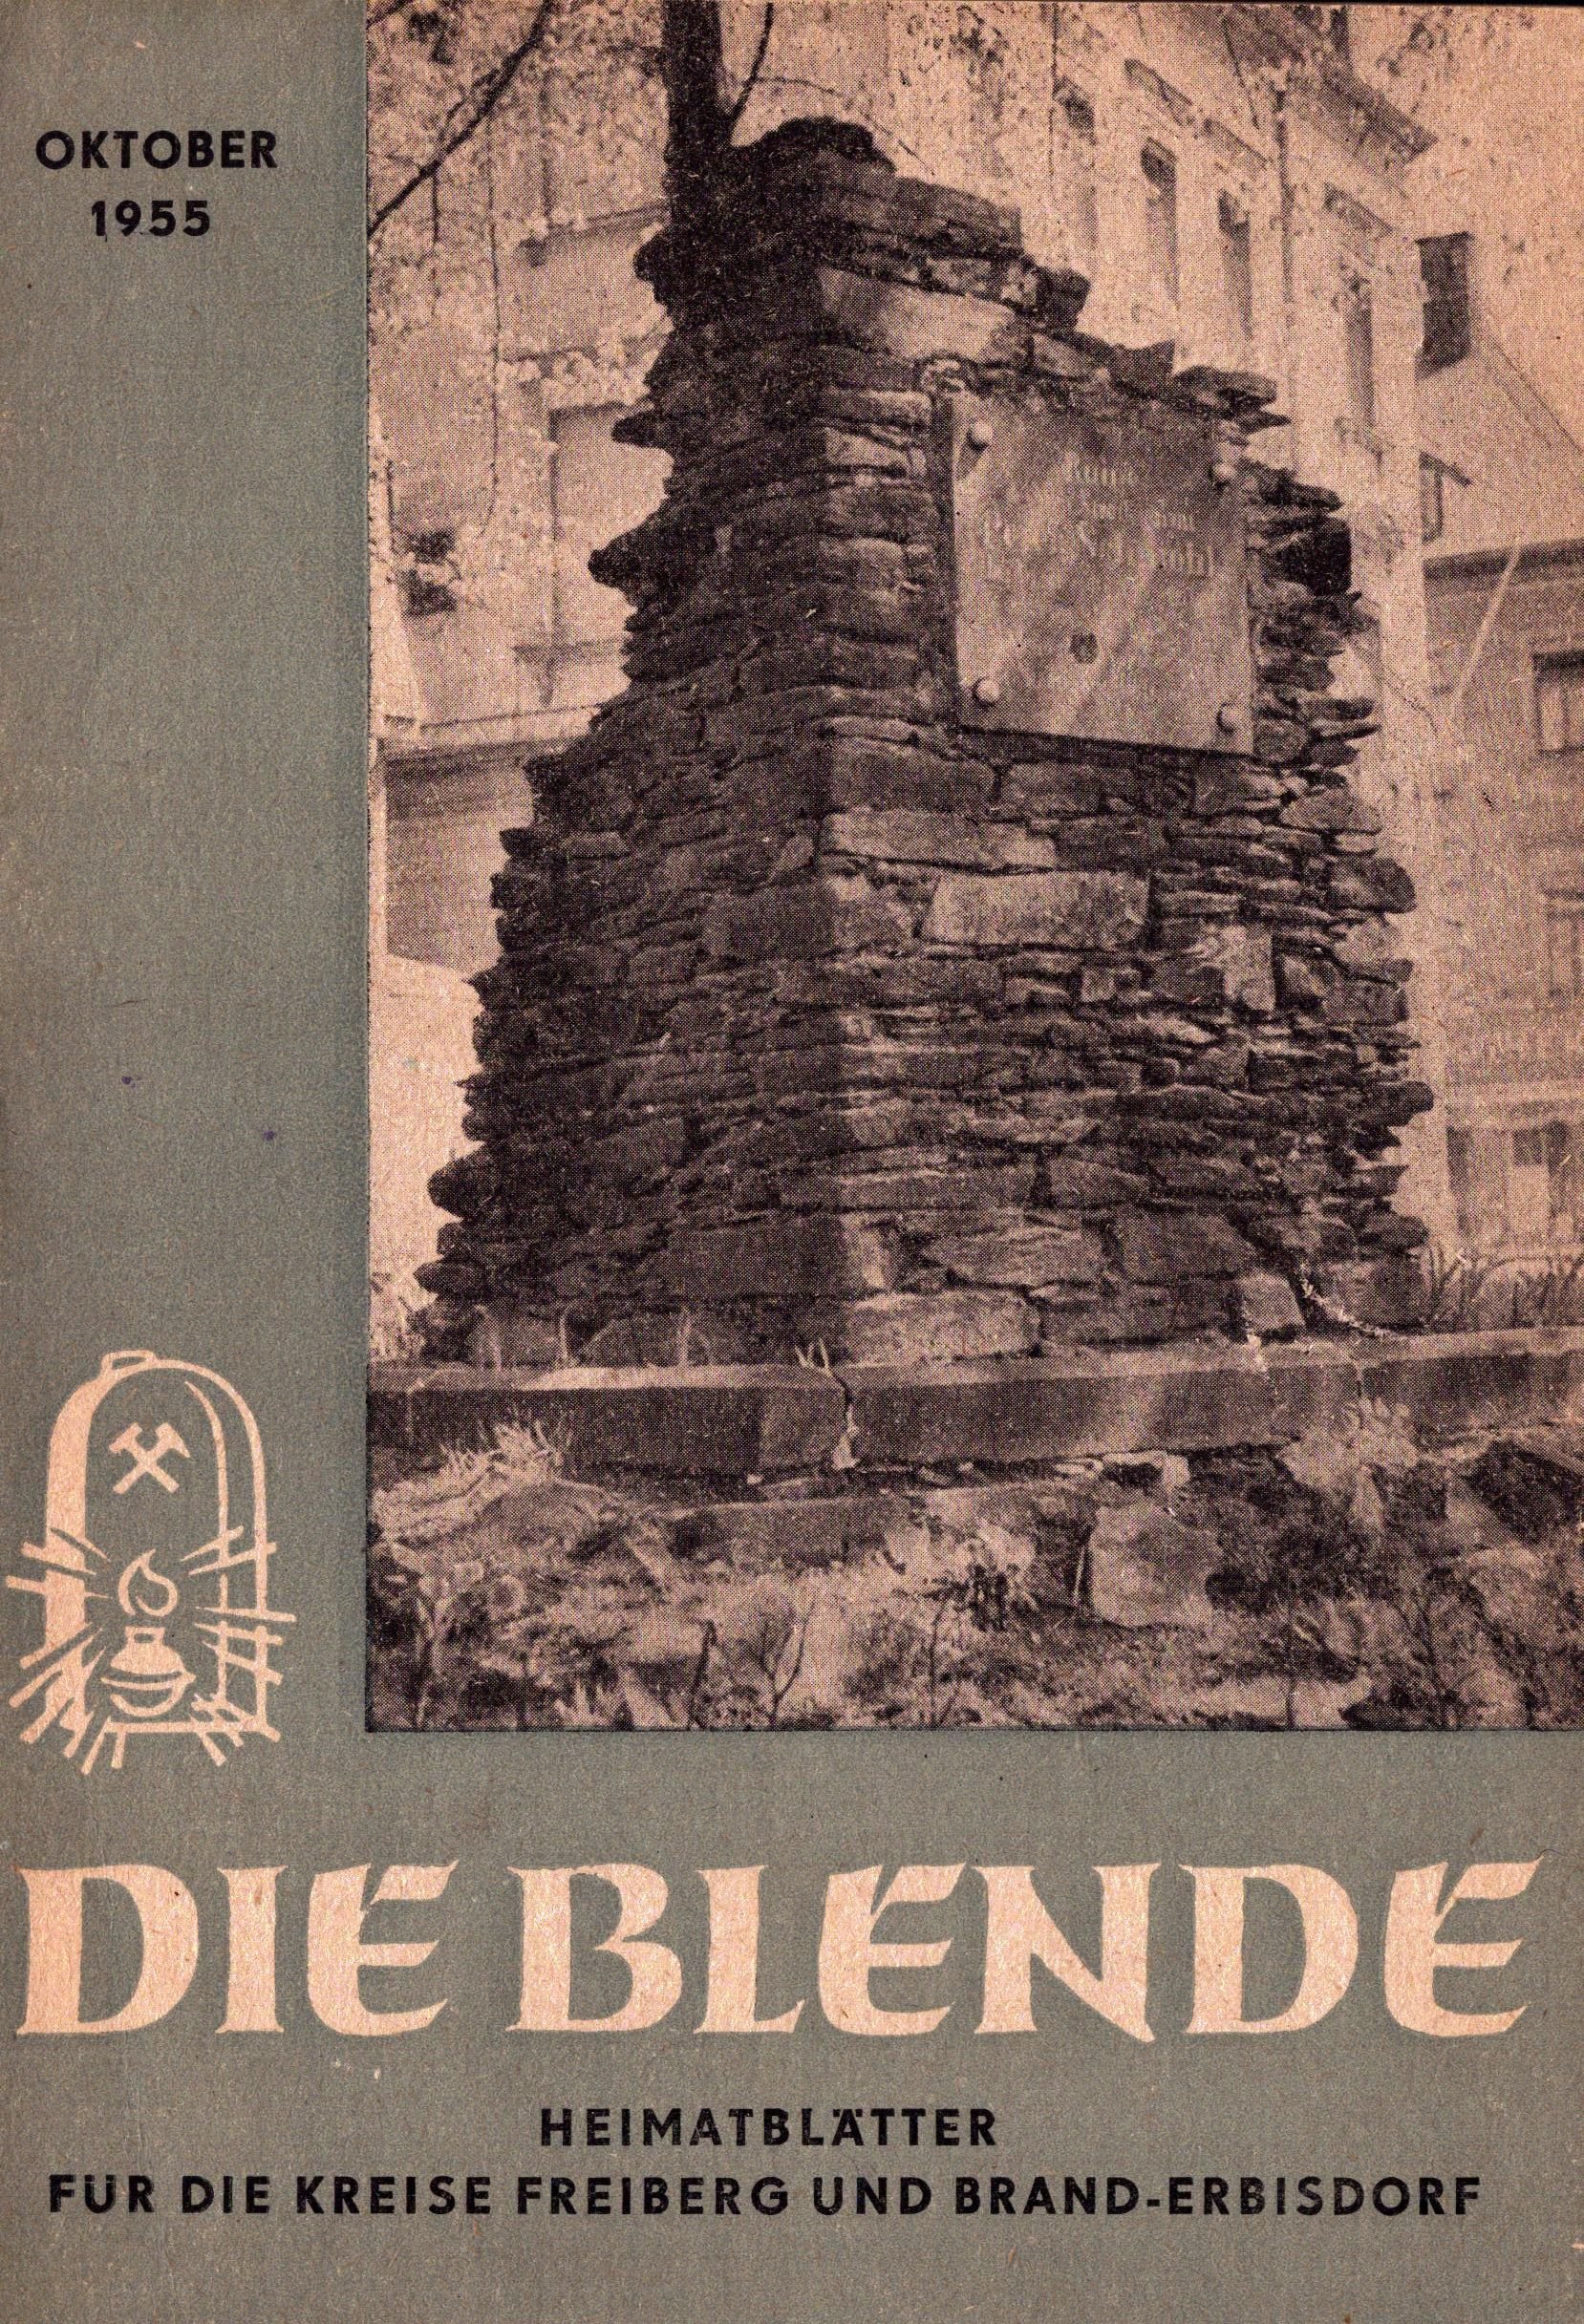 Die Blende - Heimatblätter für die Kreise Freiberg und Brand-Erbisdorf, Oktober 1955 (Archiv SAXONIA-FREIBERG-STIFTUNG CC BY-NC-SA)